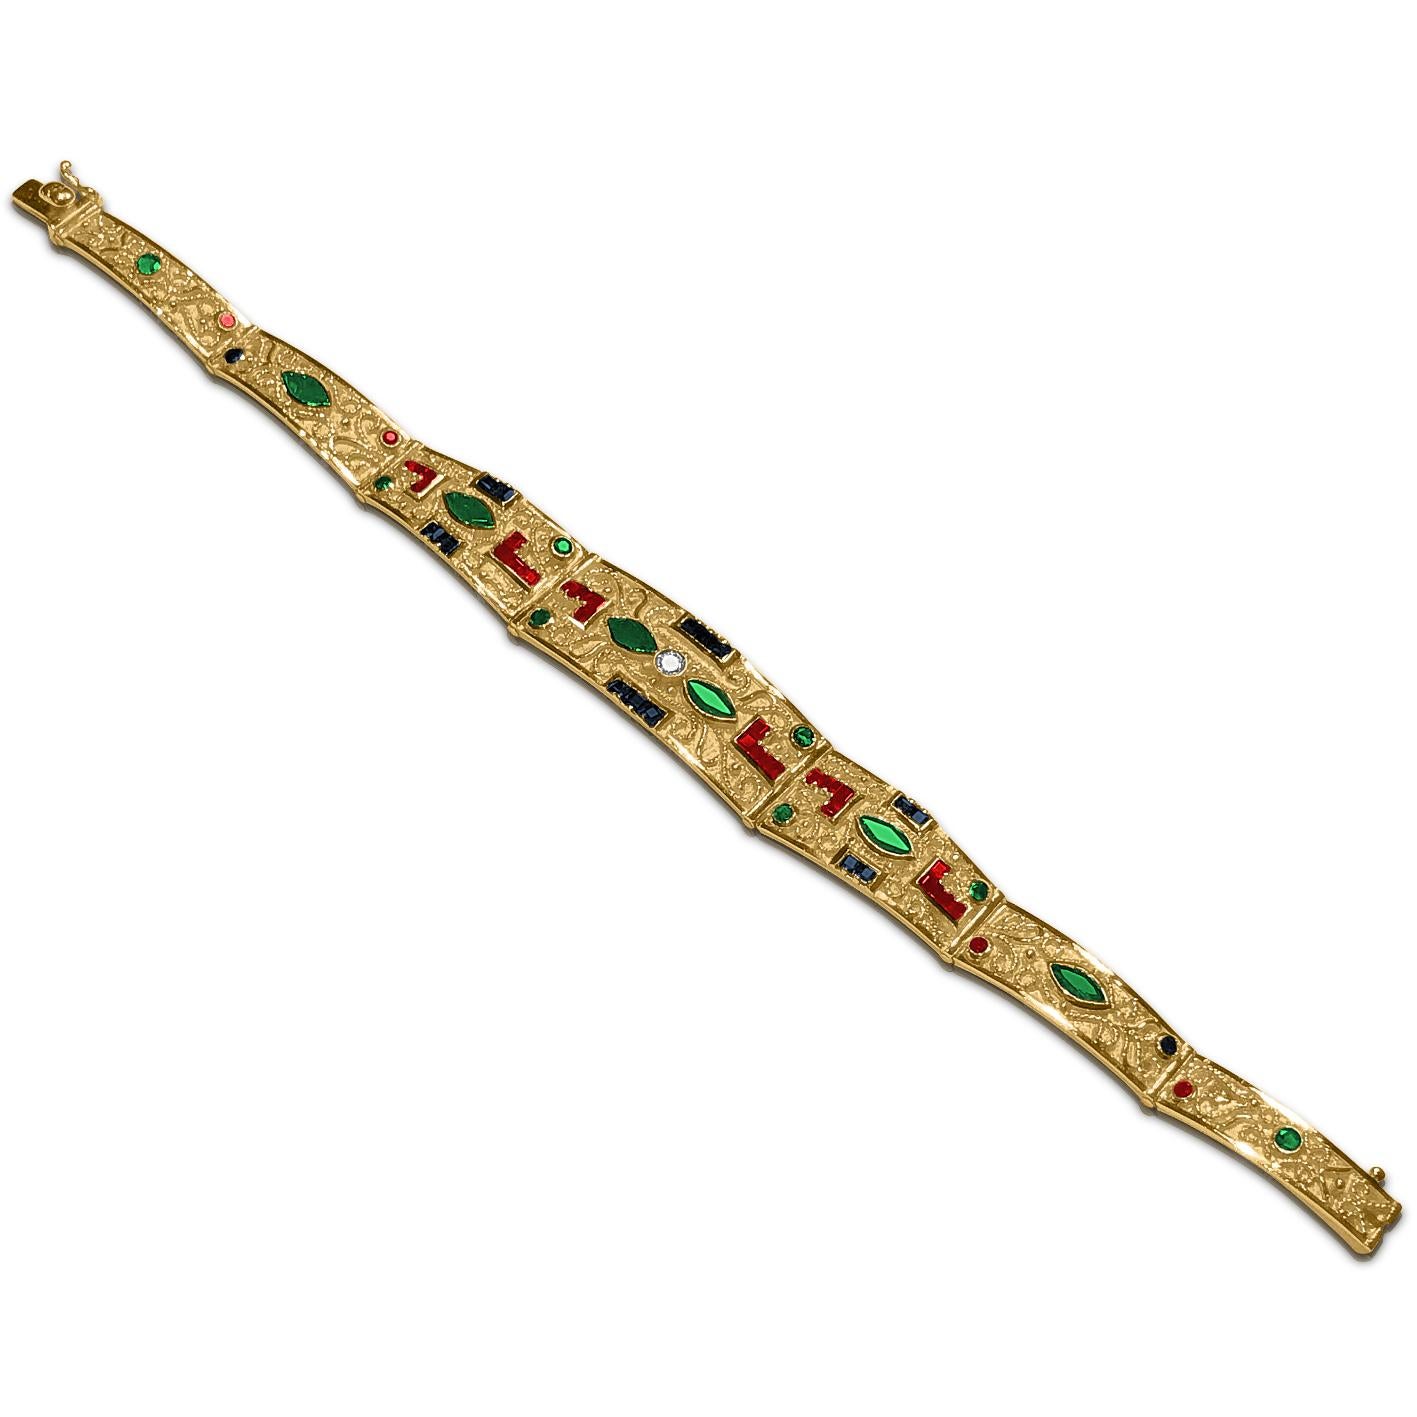 S.Georgios Armband ist handgefertigt aus massivem 18 Karat Gelbgold und ist mikroskopisch verziert mit Granulation - Gelbgoldperlen und Drähten. Granulierte Details kontrastieren mit dem Hintergrund aus byzantinischem Samt. Dieses einzigartige